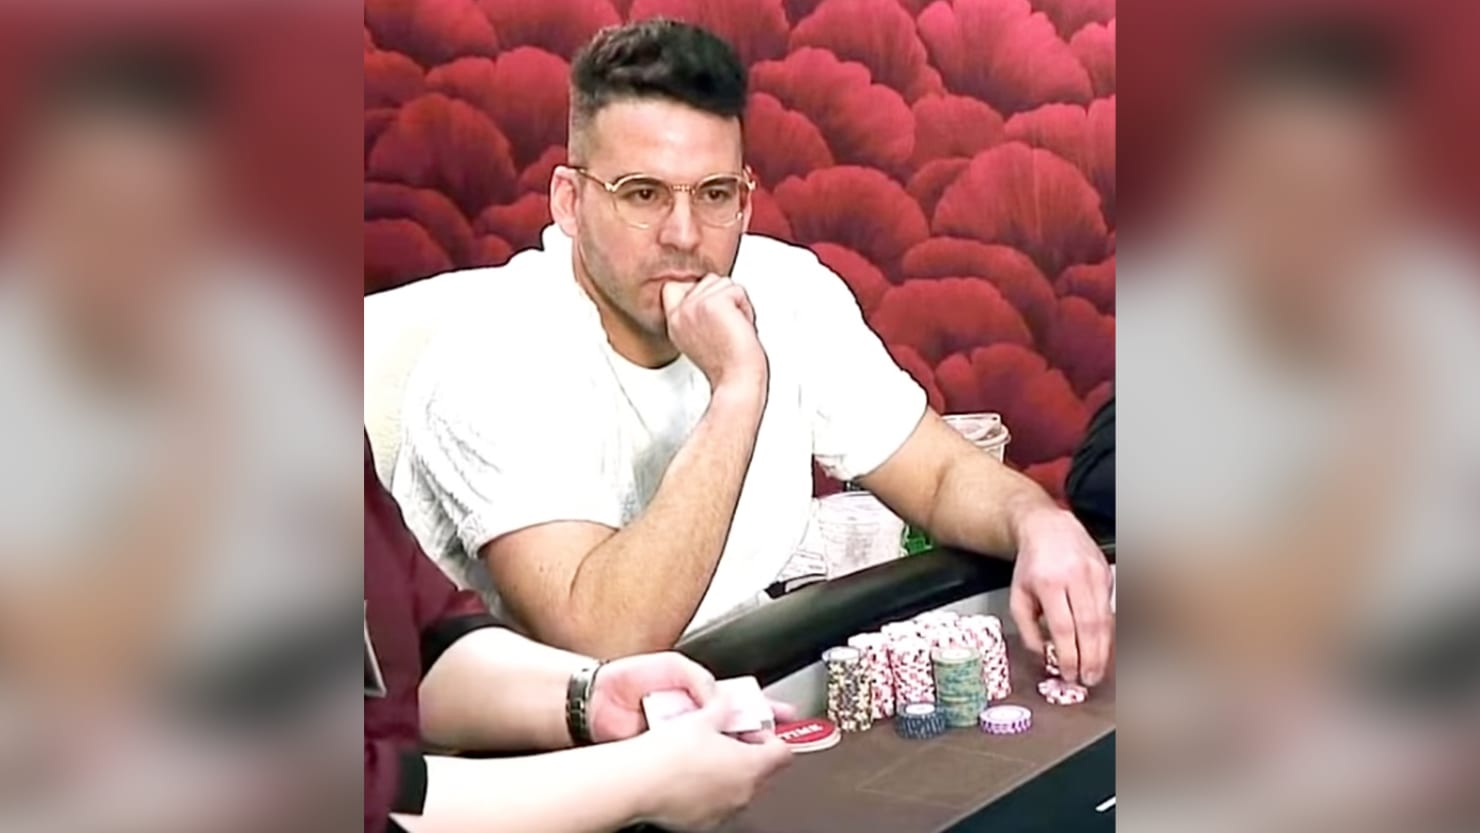 Así es como los federales dicen que un profesional del póquer escondió el dinero sucio de su casino de máquinas tragamonedas ilegales